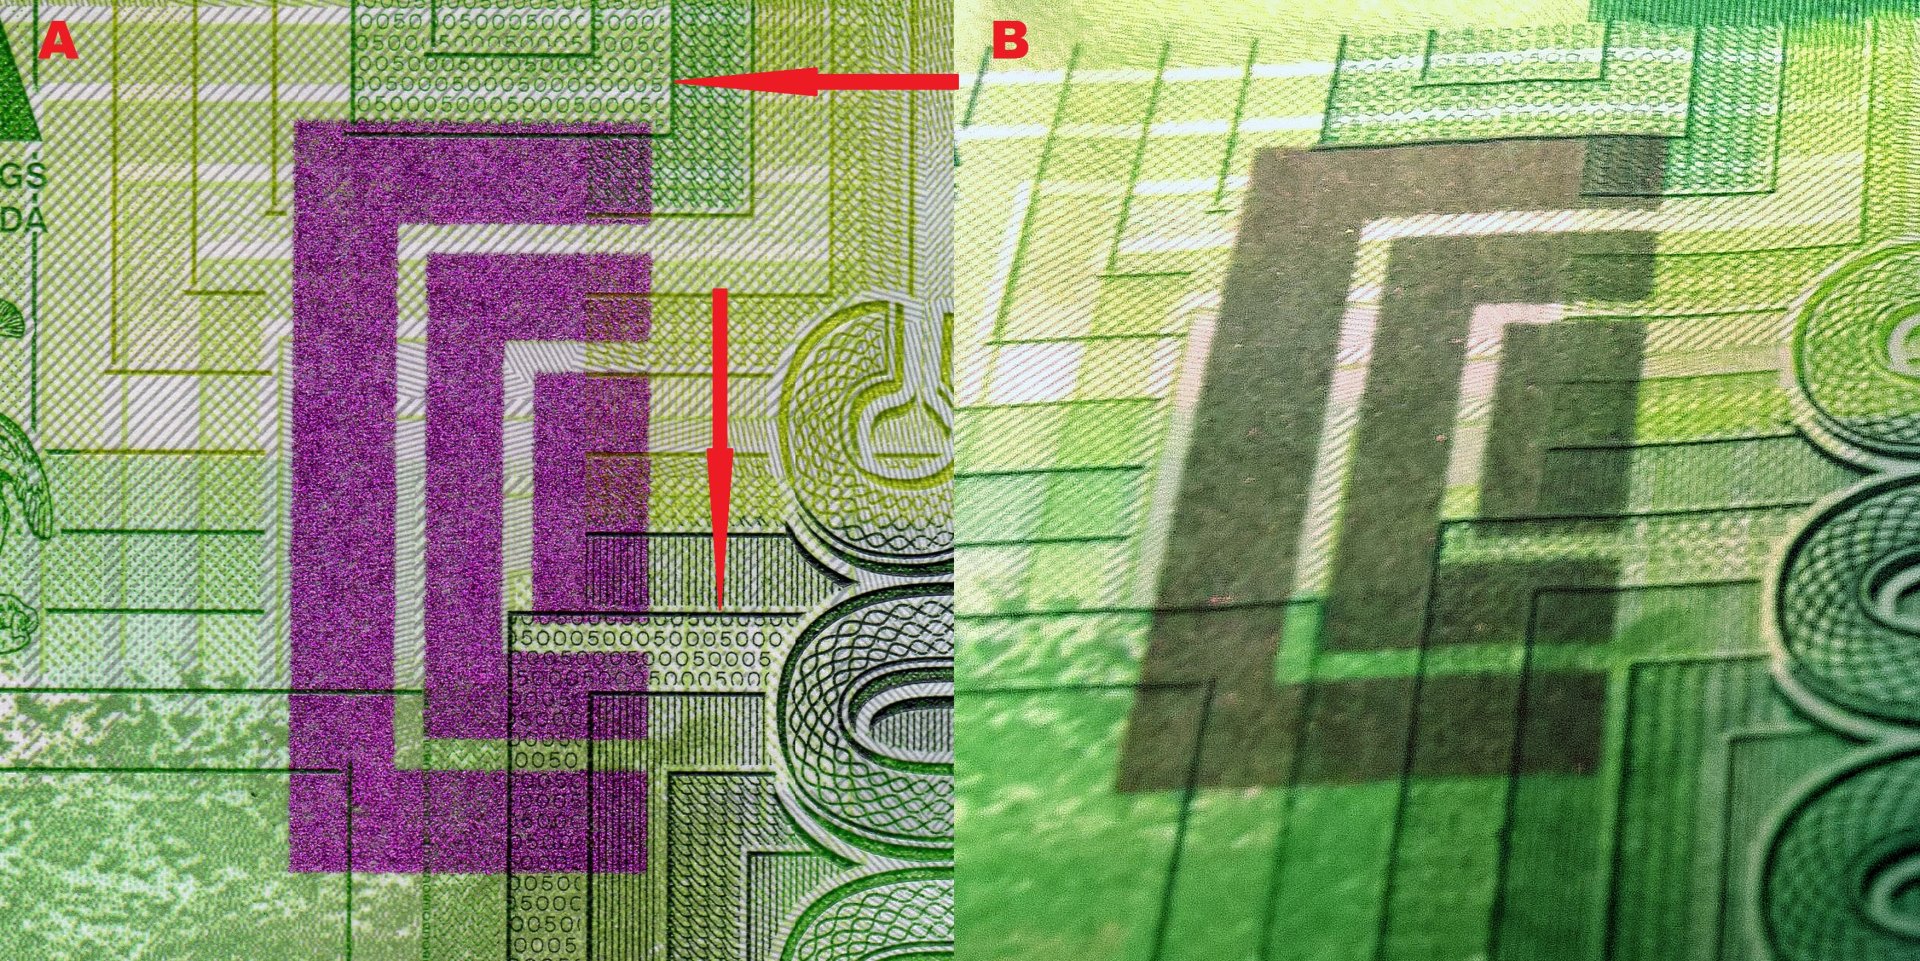 Obrázek 3 A) Pole vytvořené technologií OVI při kolmém pozorován, šipky označují políčka s pozitivním mikropísmem B) Při pozorování pod úhlem 45° je zachycena změna barvy z fialové na tmavě zelenou.